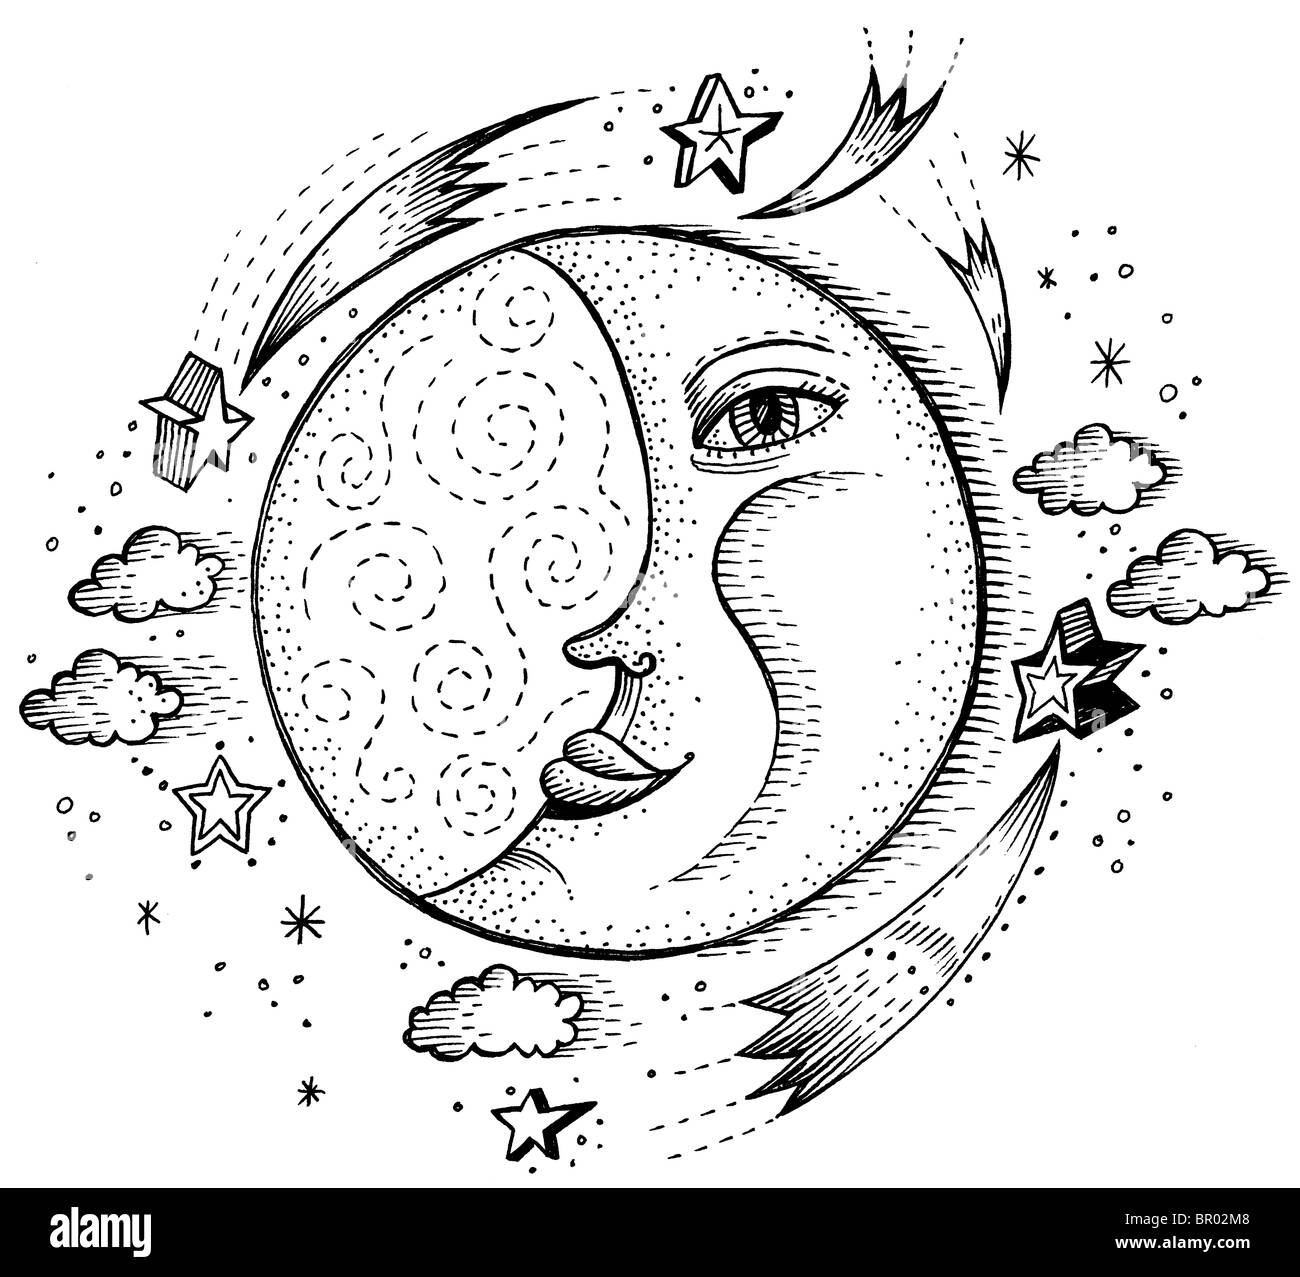 Einen schwarzen und weißen Mond mit einem menschlichen Gesicht und Sternschnuppen und Wolken um ihn herum Stockfoto